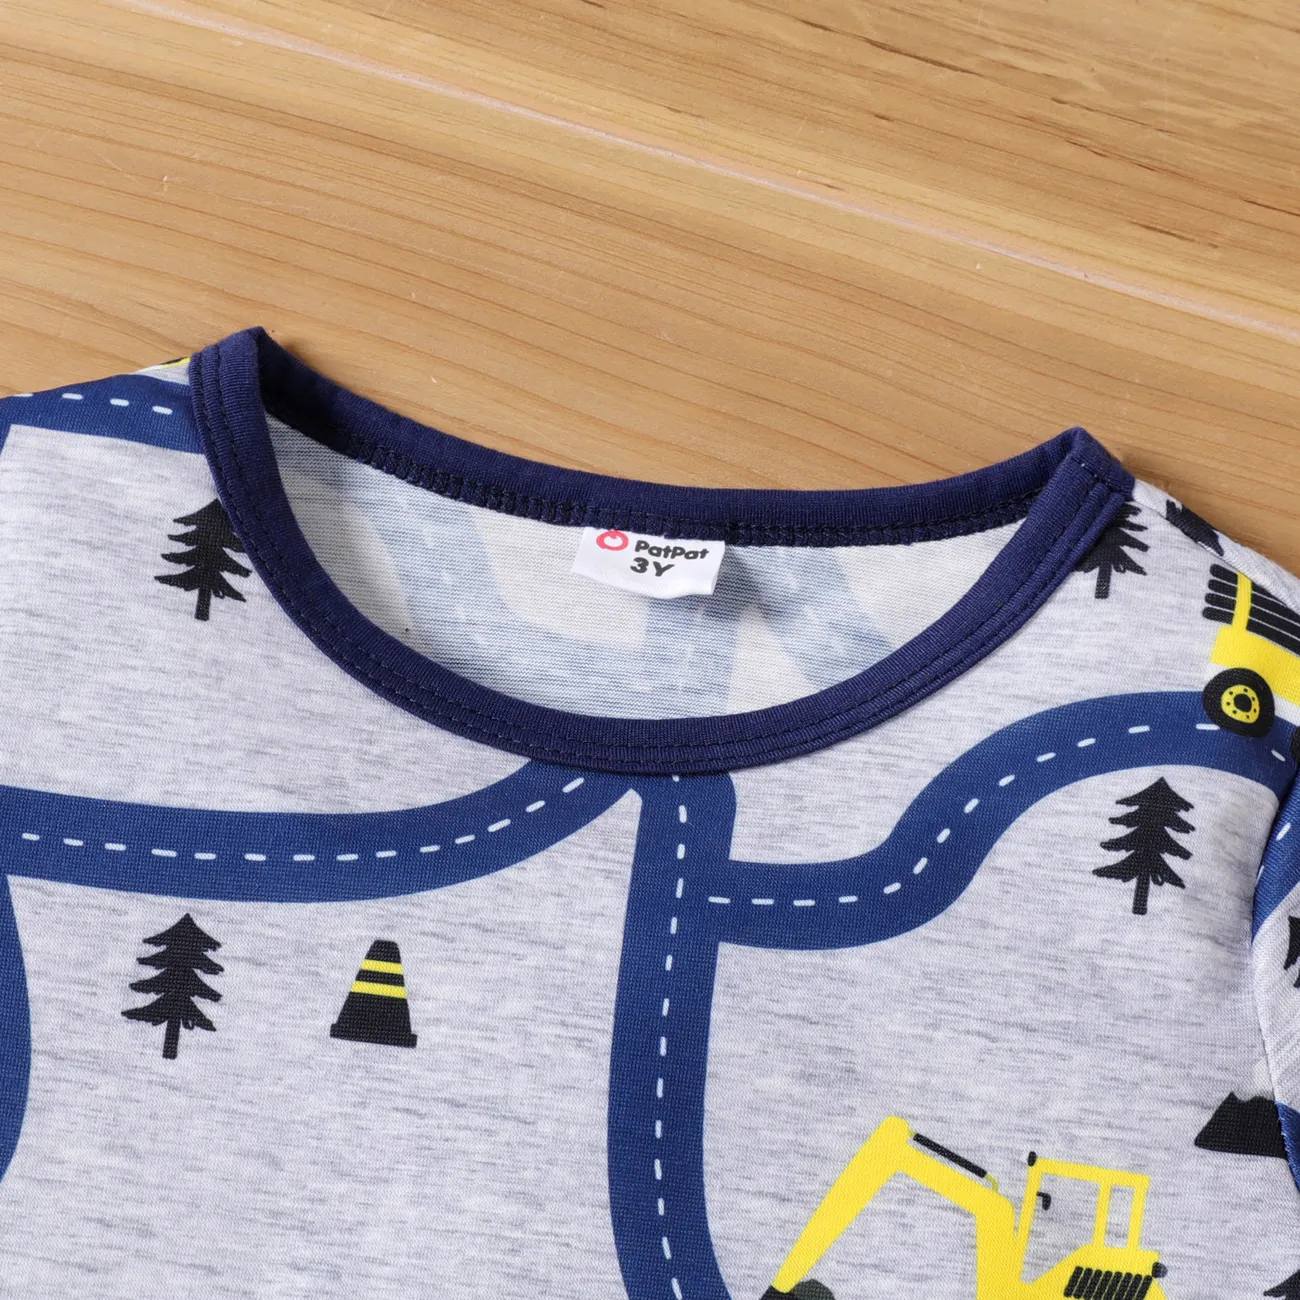 2-piece Toddler Boy Road Vehicle Print Short-sleeve Tee and Elasticized Grey Shorts Set Blue big image 1